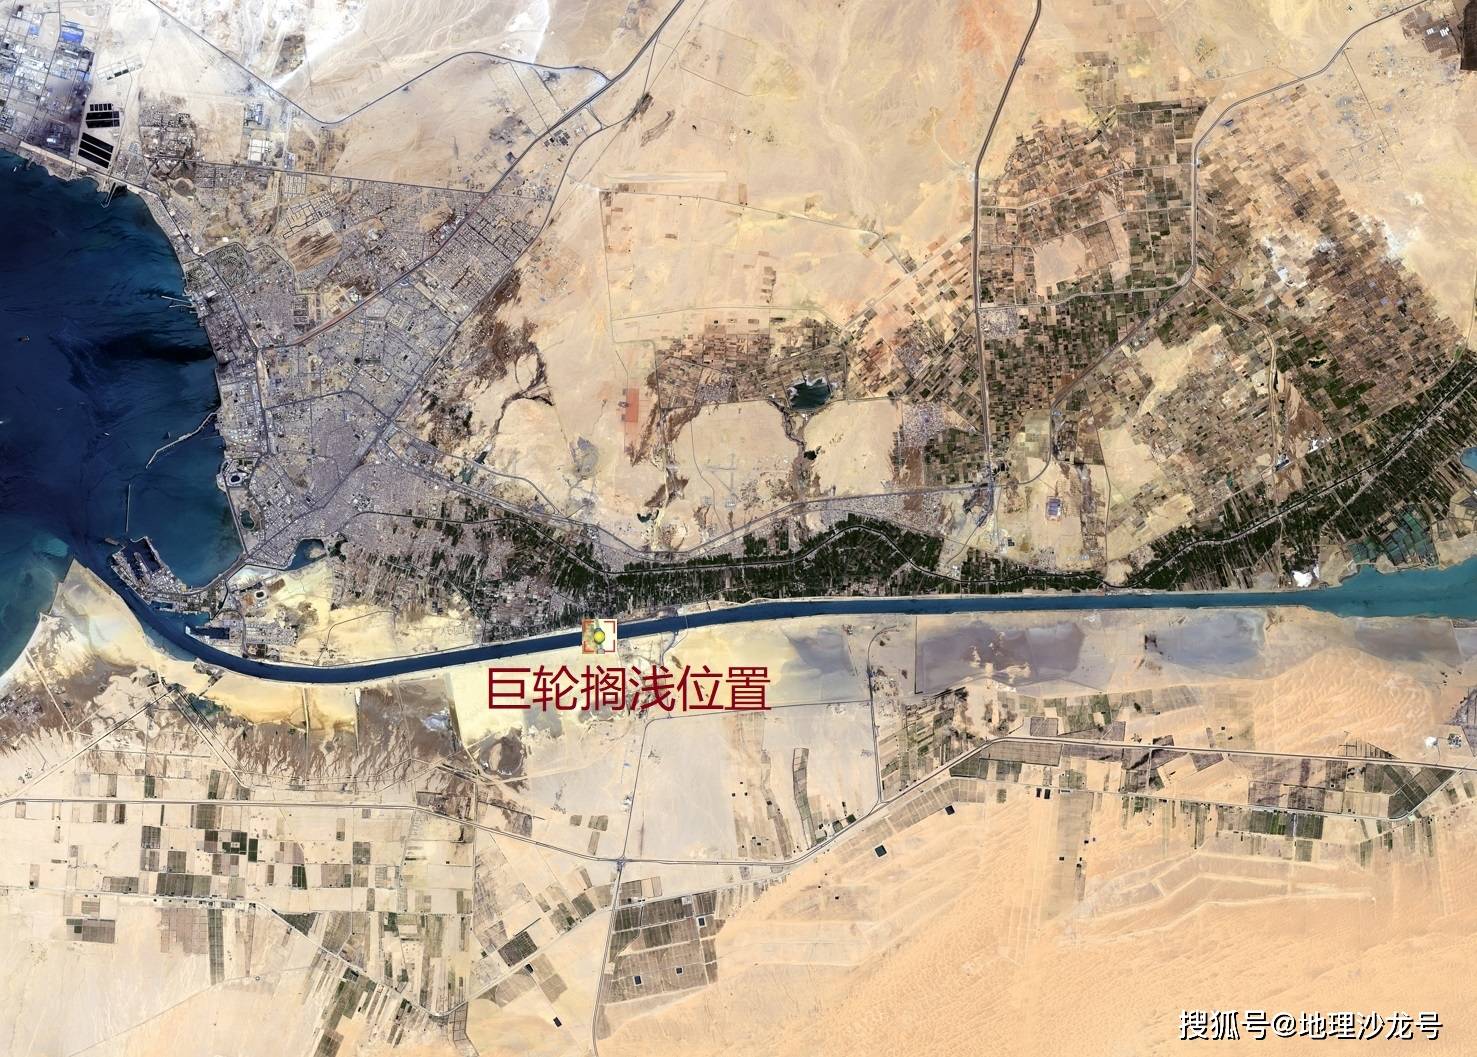 巨型集装箱货轮发生事故堵塞苏伊士运河,世界最繁忙航线被迫中断